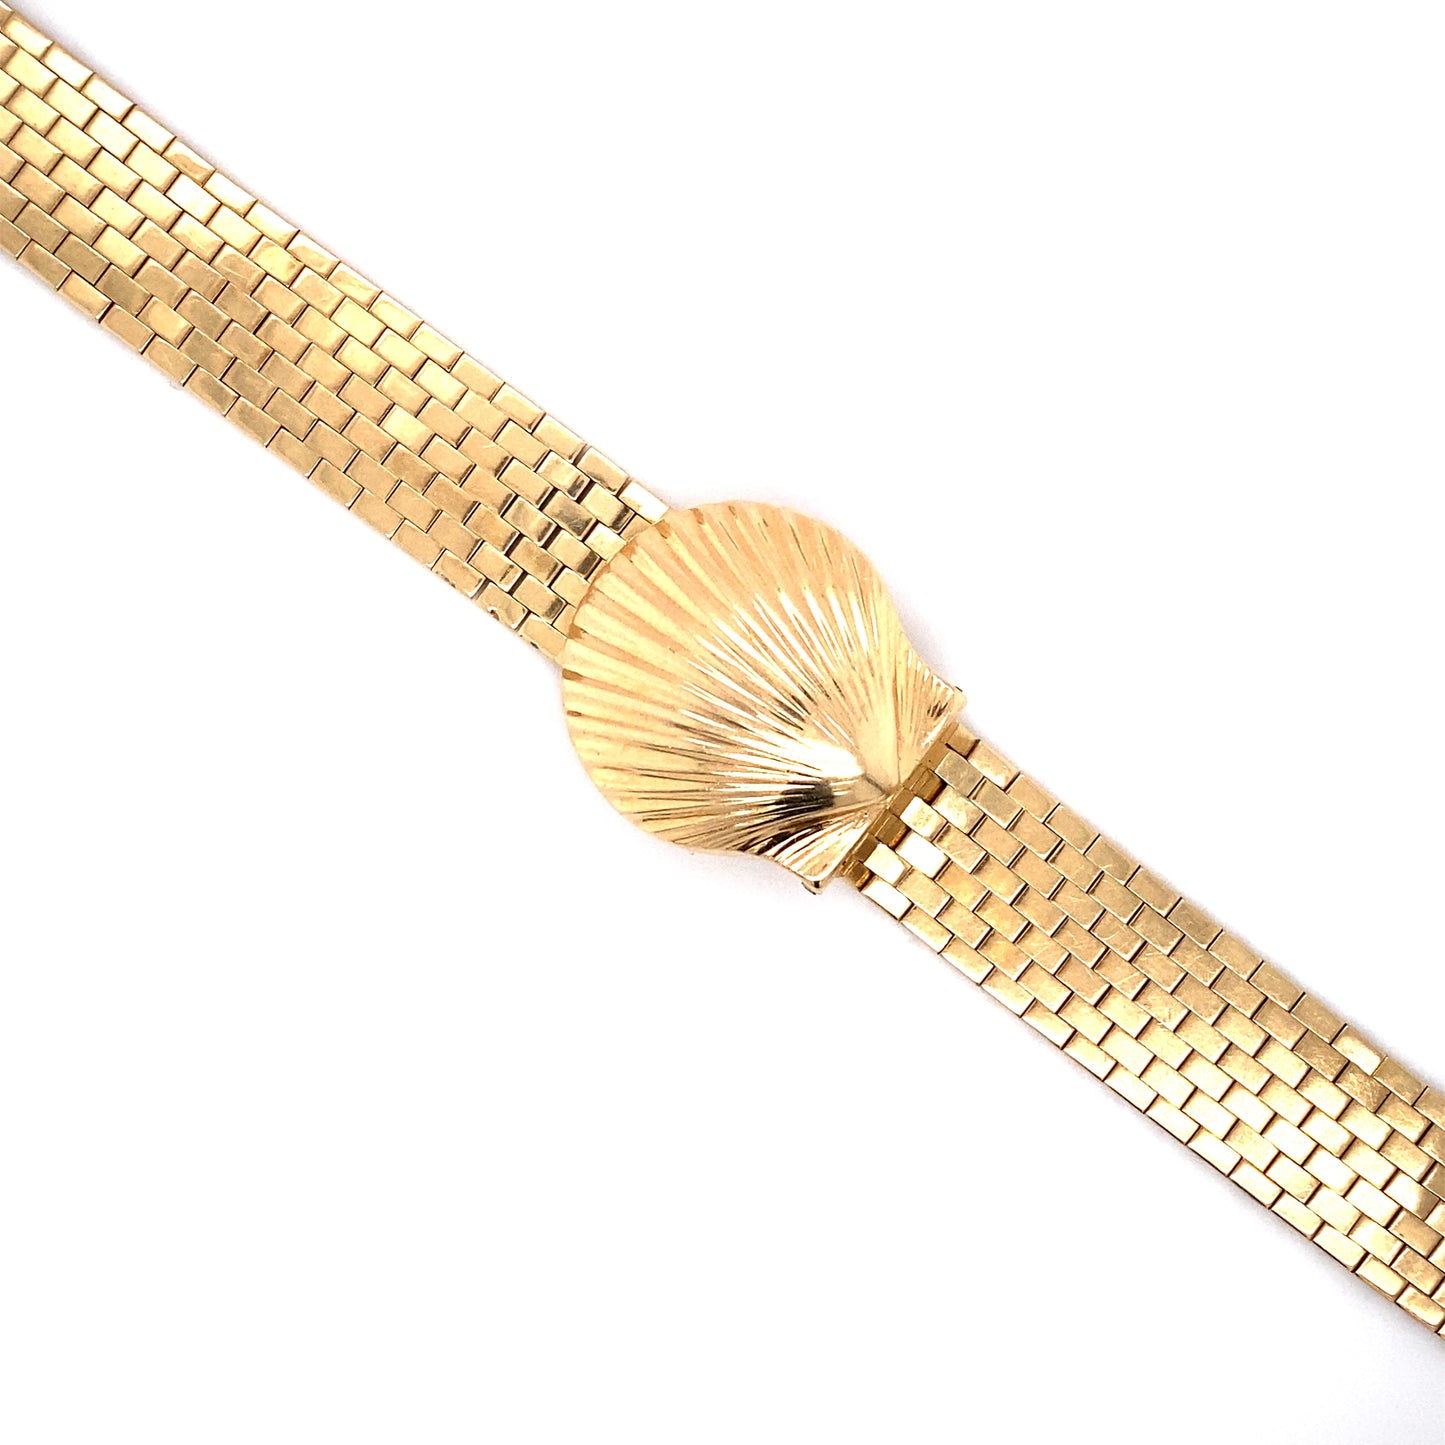 Circa 1946 Cartier Seashell Peekaboo Womens' Wristwatch in 14K Gold